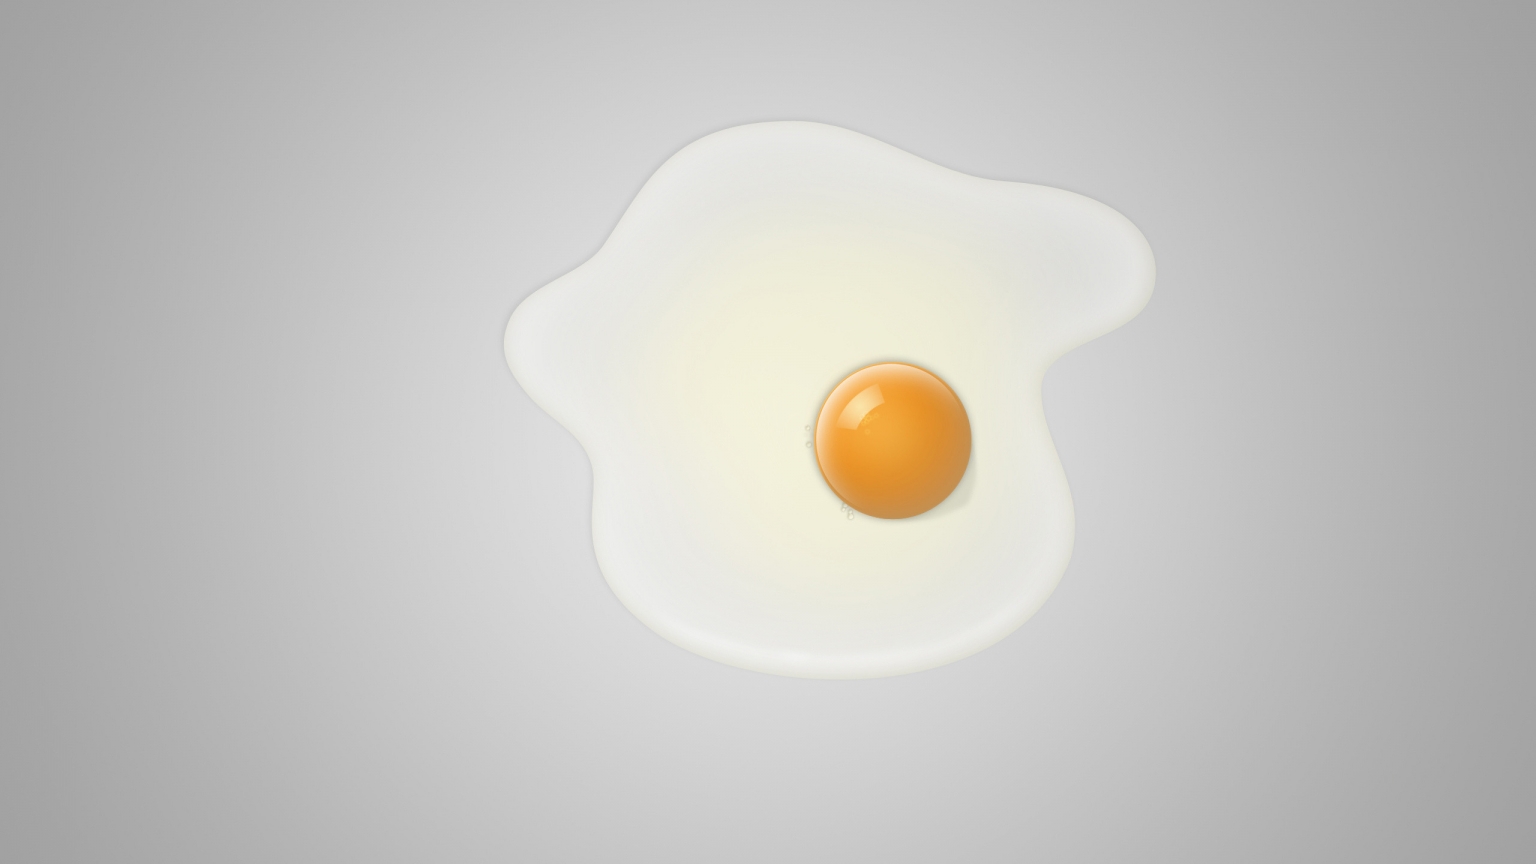 Minimal fried egg for 1536 x 864 HDTV resolution